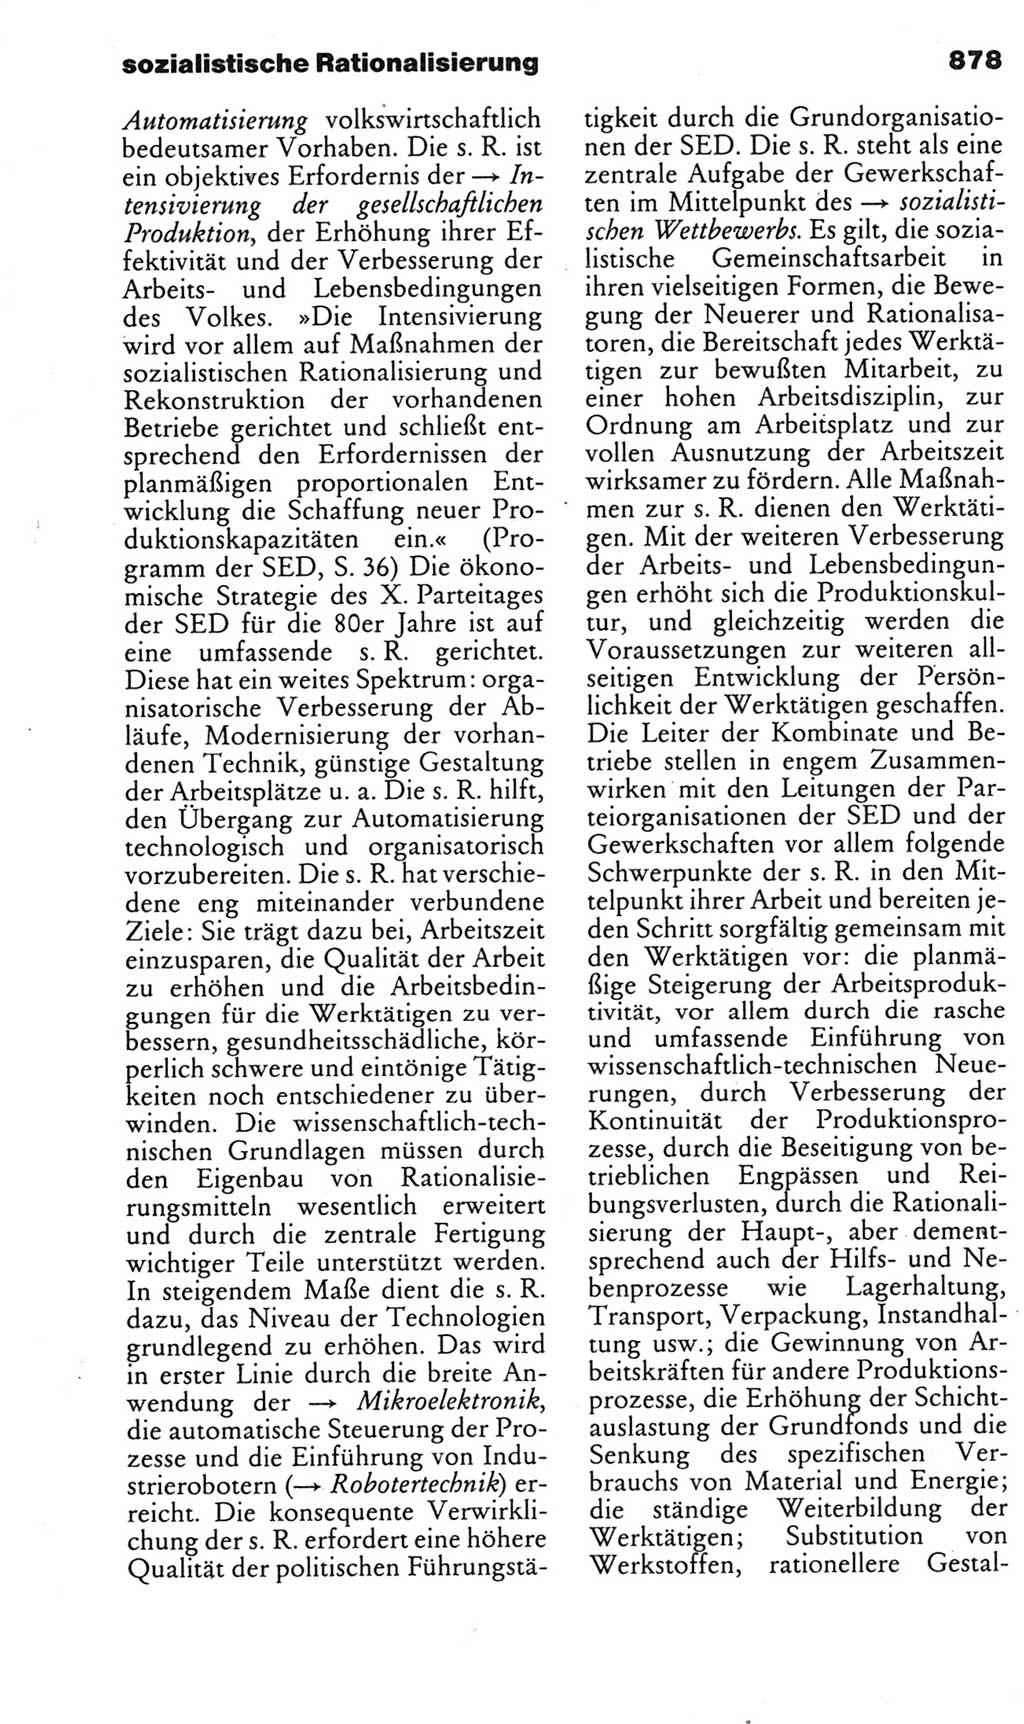 Kleines politisches Wörterbuch [Deutsche Demokratische Republik (DDR)] 1985, Seite 878 (Kl. pol. Wb. DDR 1985, S. 878)